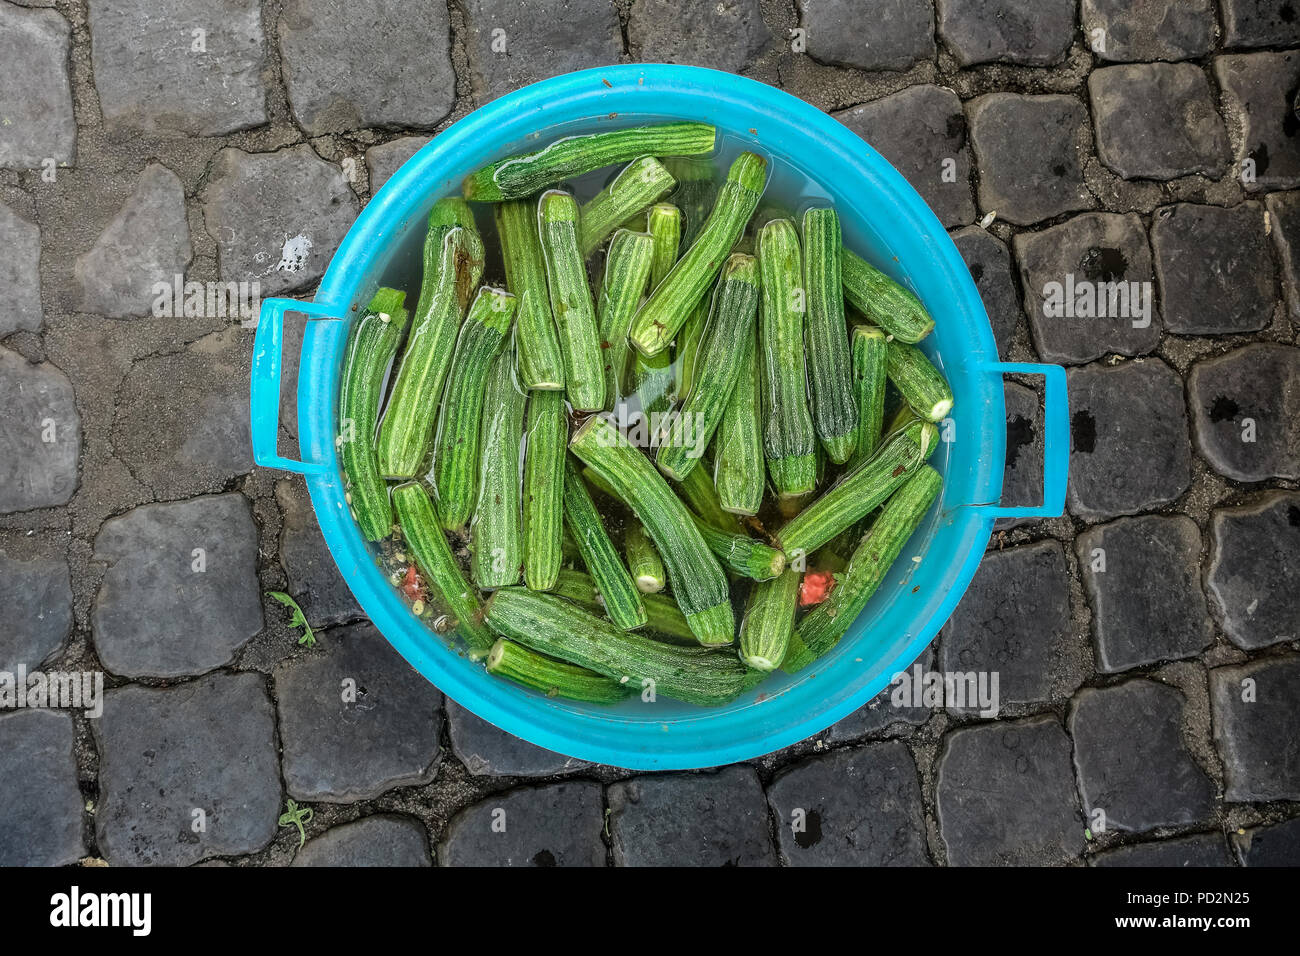 Trempés de courgettes dans un bol en plastique sur la chaussée d'un marché à Rome, Italie Europe, UE. Courgettes légumes, végétarien, nourriture de régime végétalien. Banque D'Images